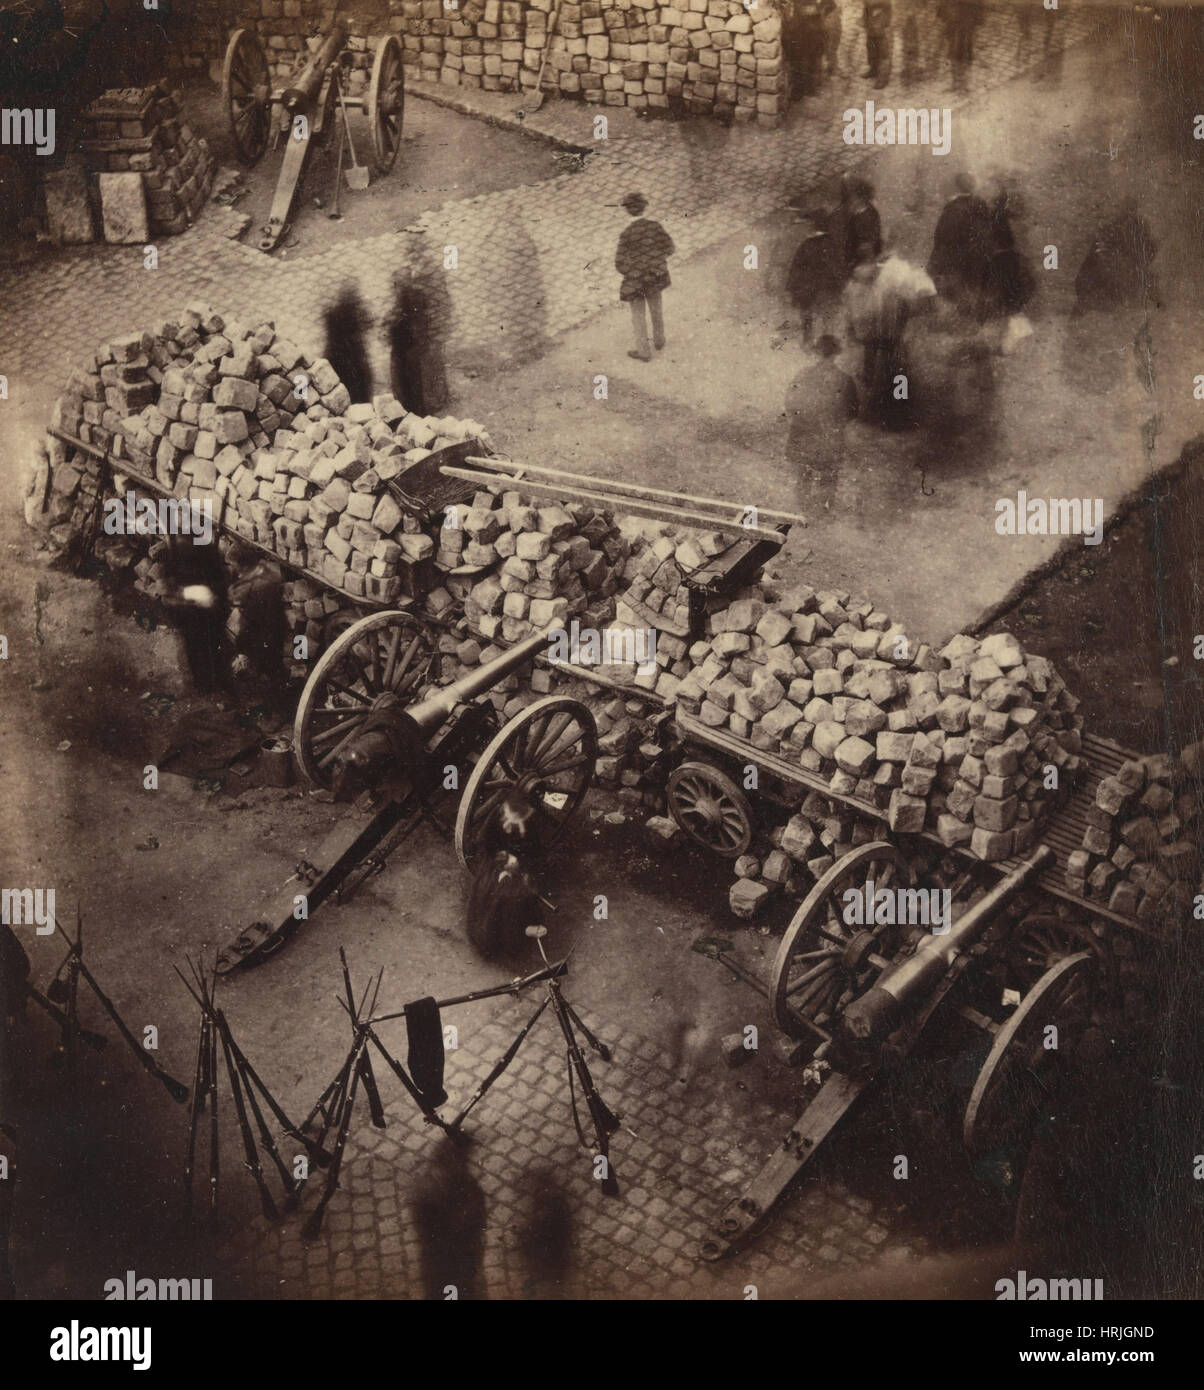 Paris Commune Barricades, 1871 Stock Photo